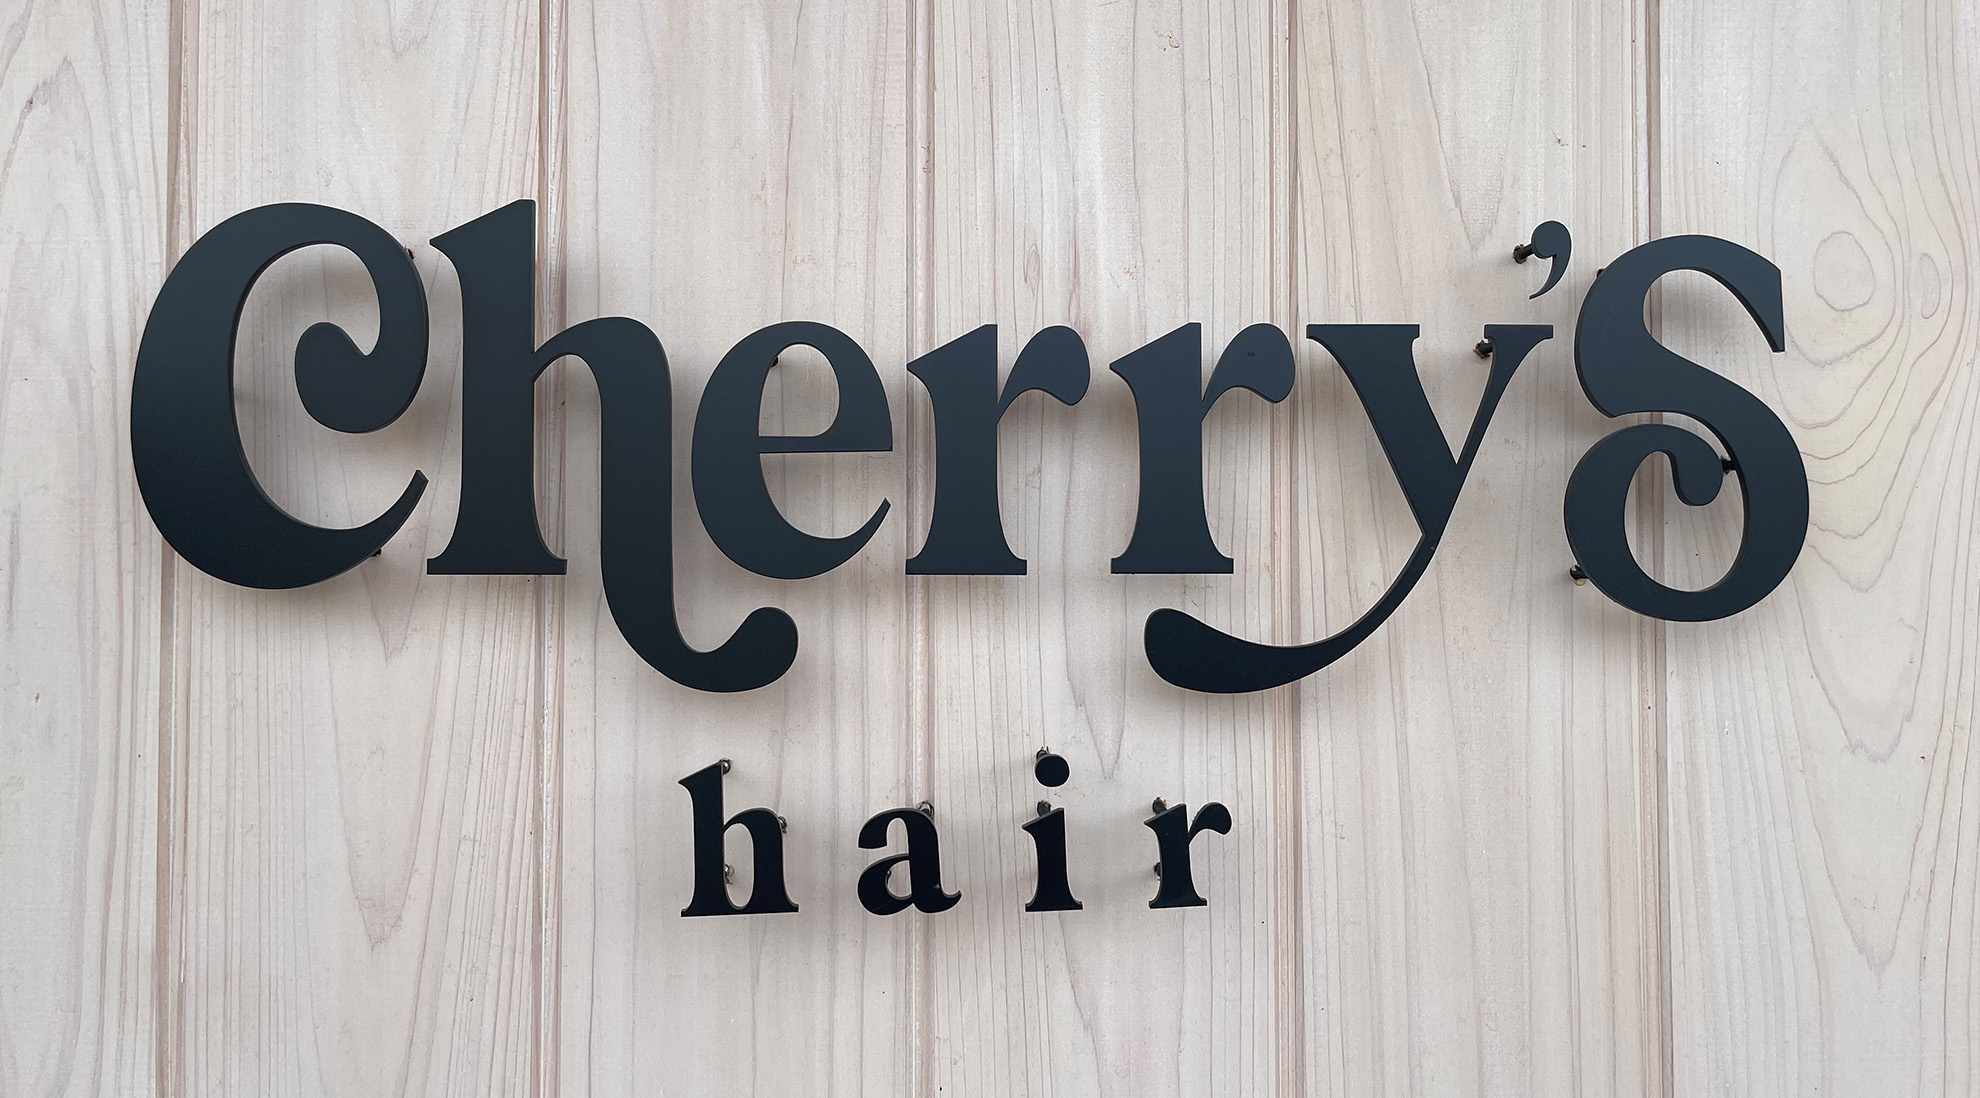 猿島郡境町にある美容室 アットホームサロンCherry’s hair（チェリーズヘア）